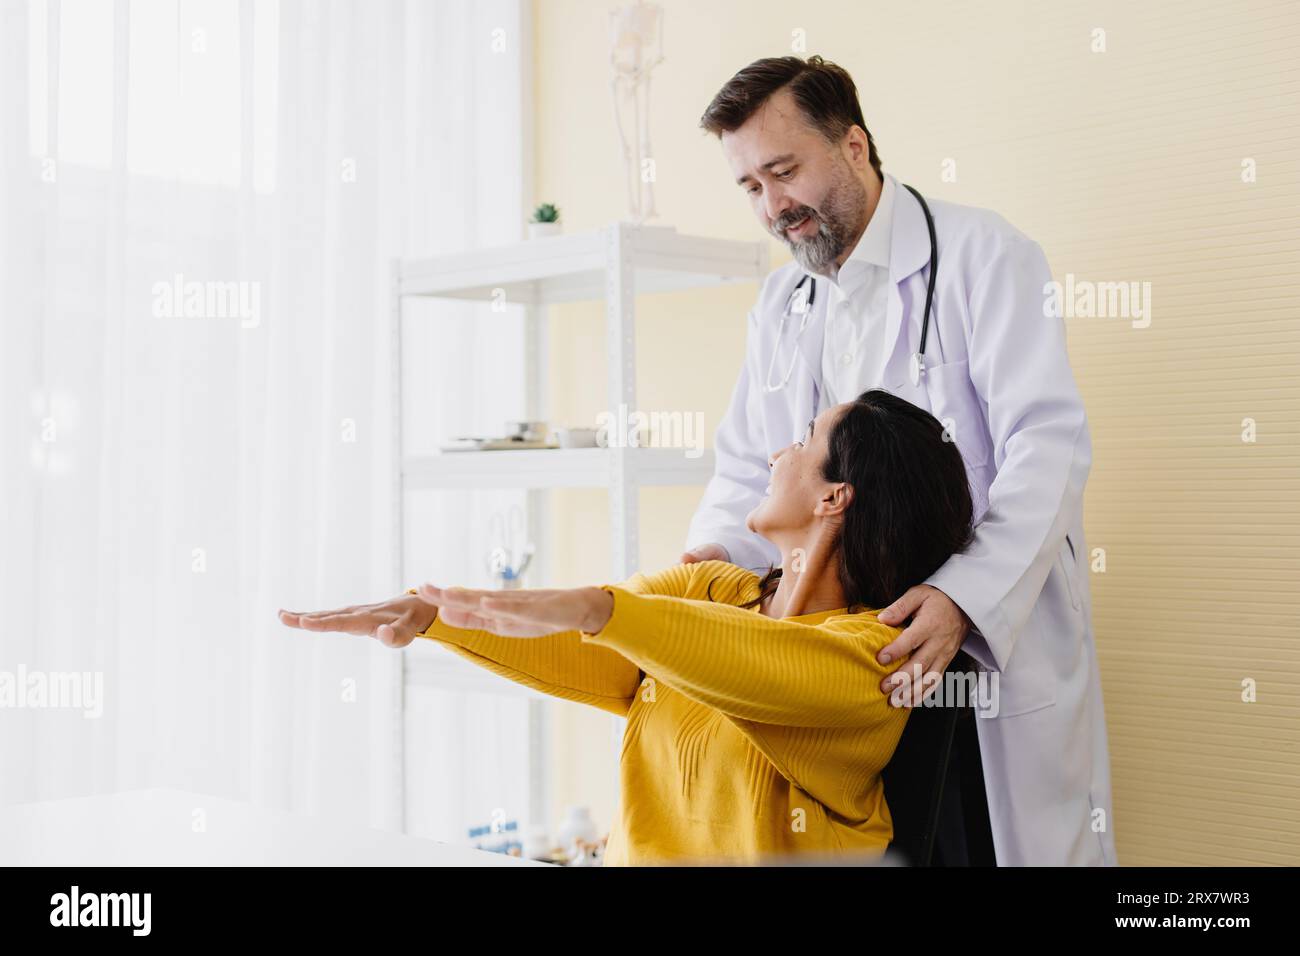 Patient Frau Armmuskelschmerzen Treffen Sie Senior Arzt für Physiotherapie Heilung und Erholung zurück gut arbeiten und sie sehr glücklich Stockfoto